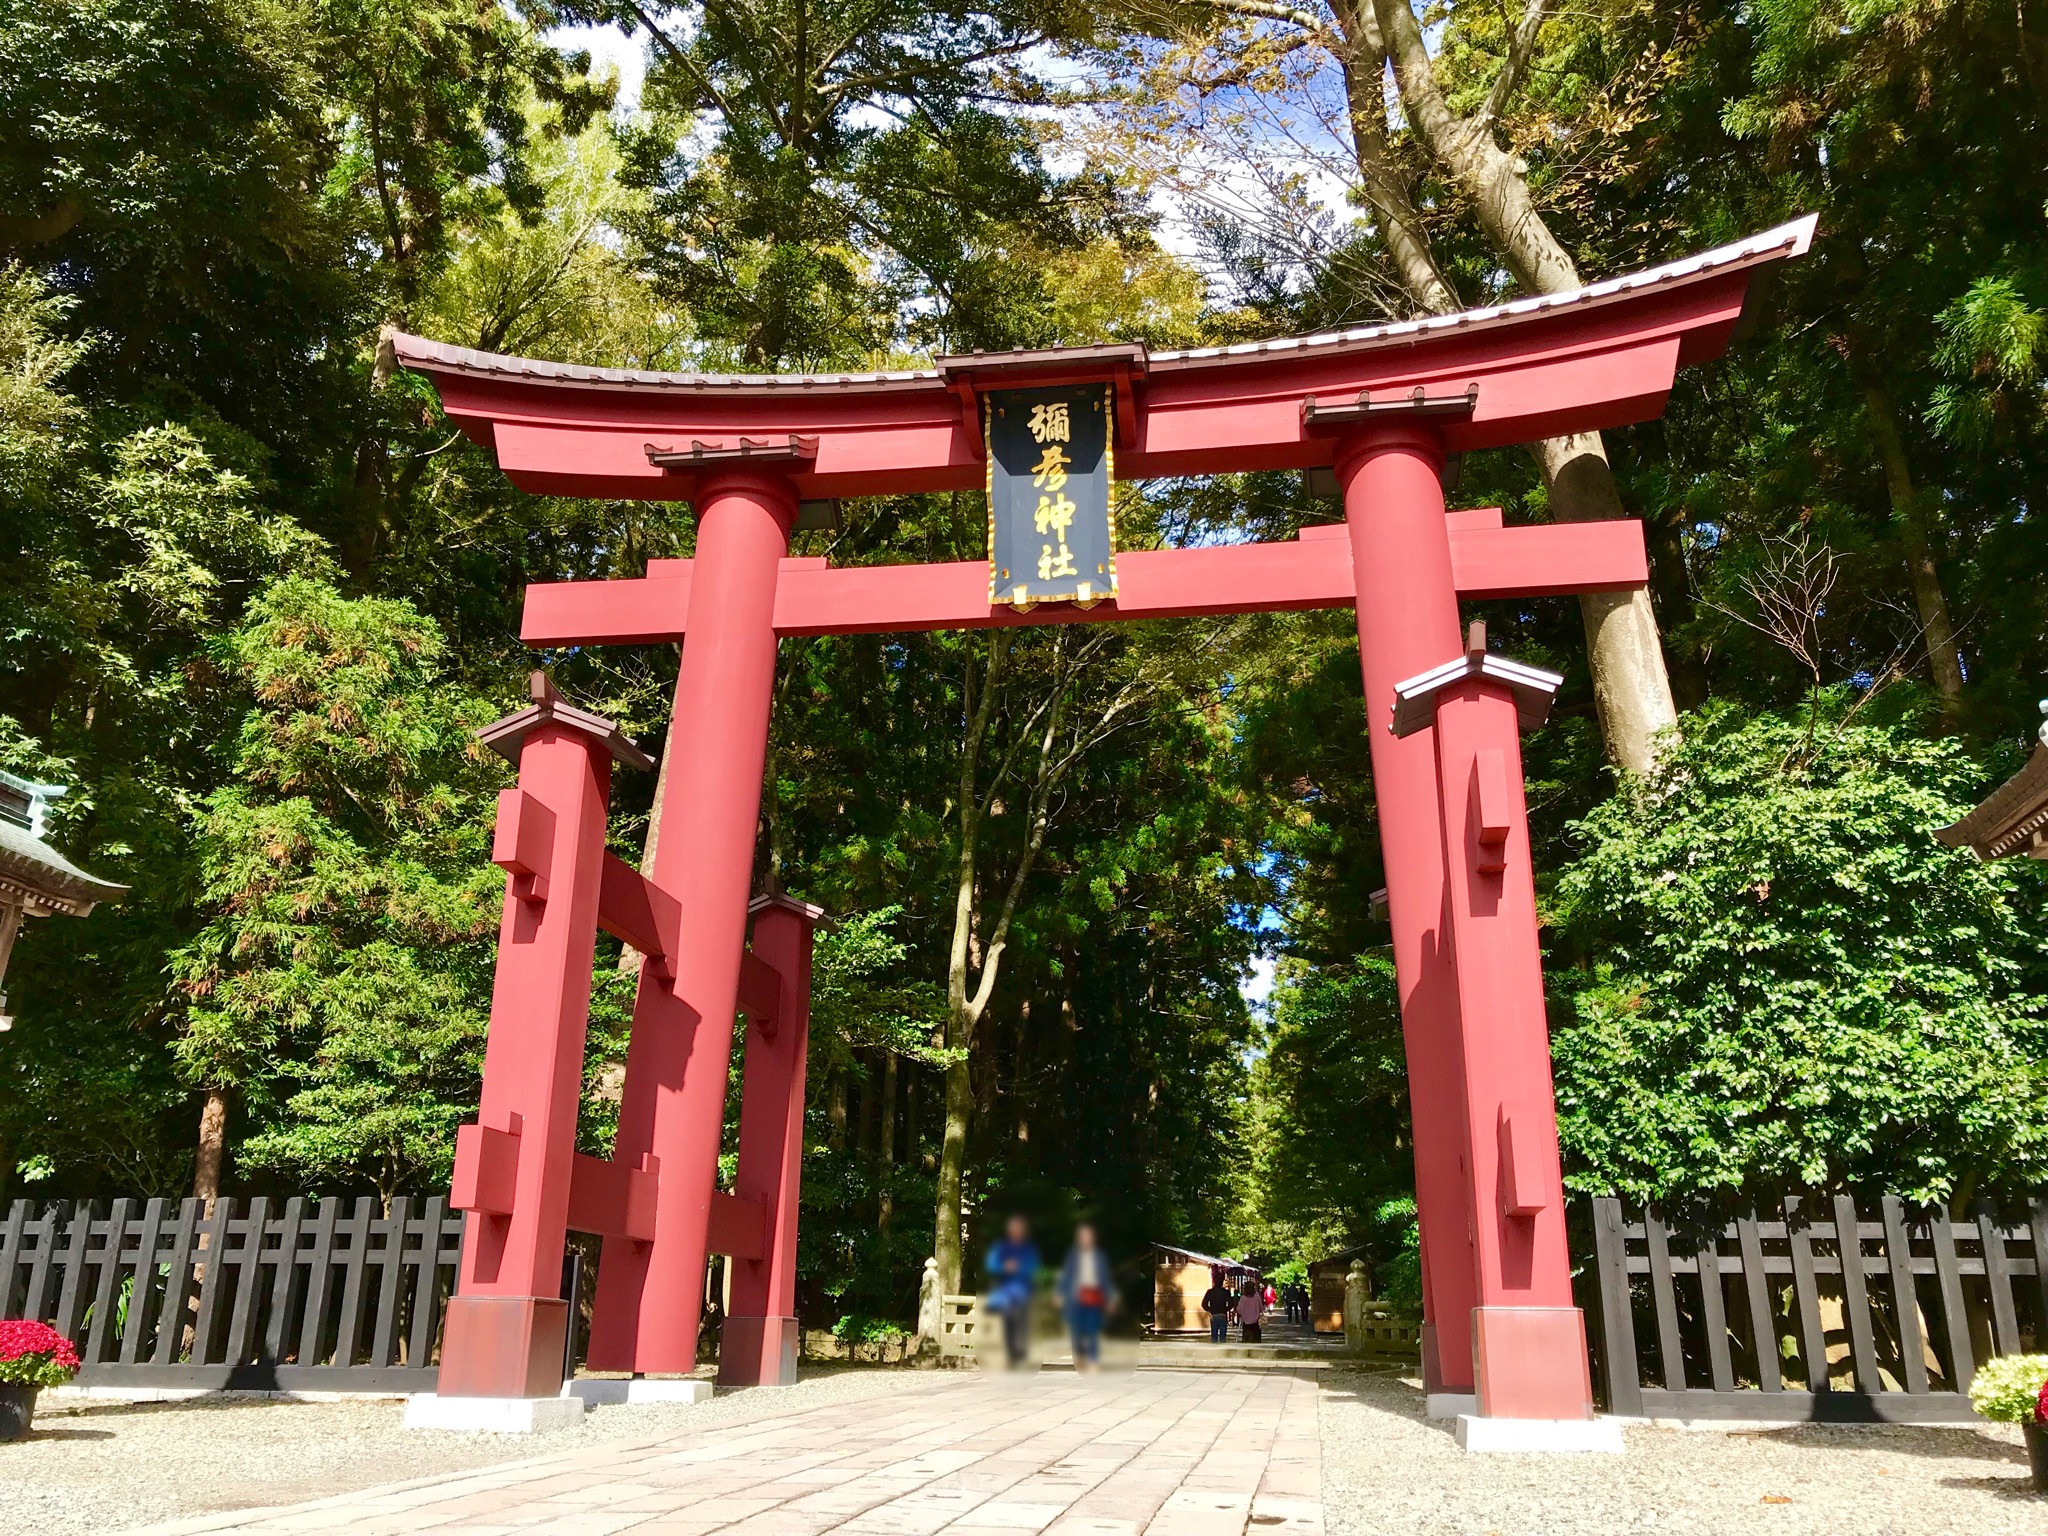 新潟人氣第一的神社 彌彥神社 美不勝收的風景 像是進入了宮崎駿的世界 暢遊新潟